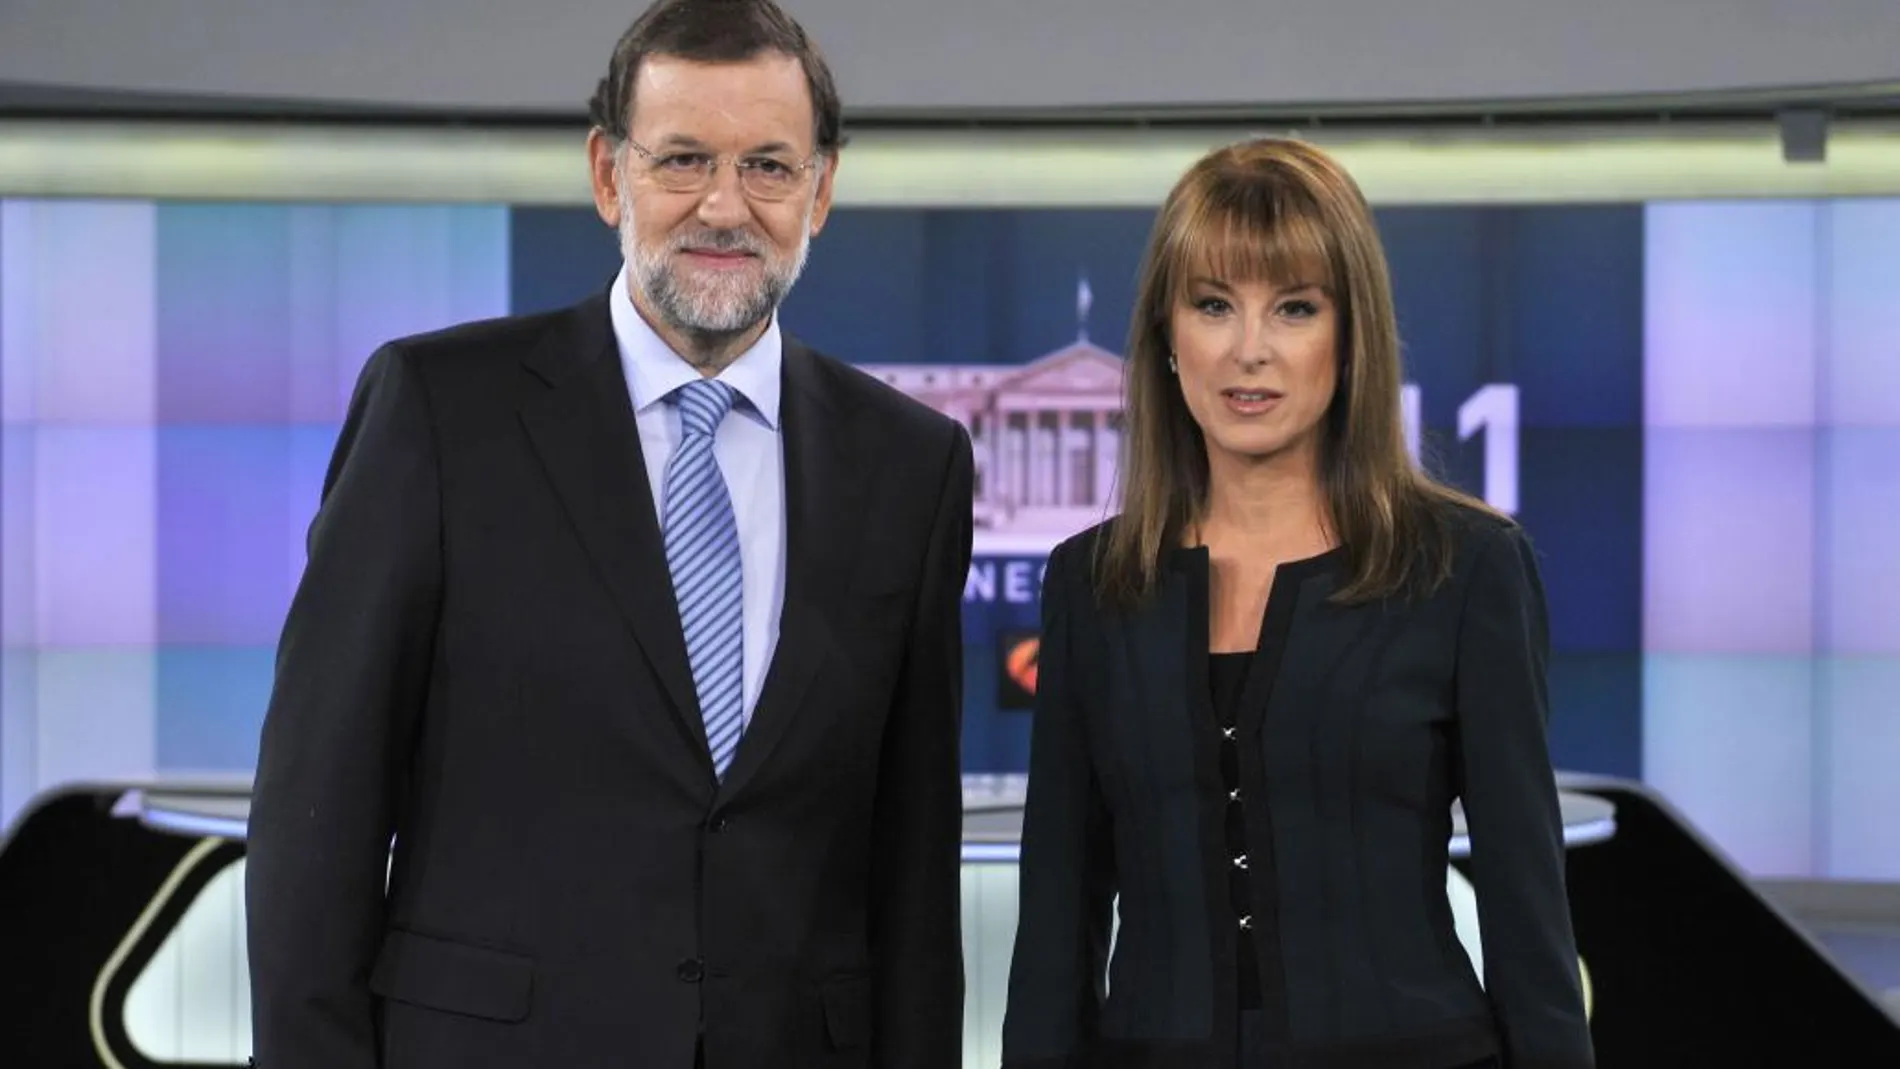 El plató de Antena3 Noticias, durante la última entrevista de Lomana a Rajoy, en enero de 2014